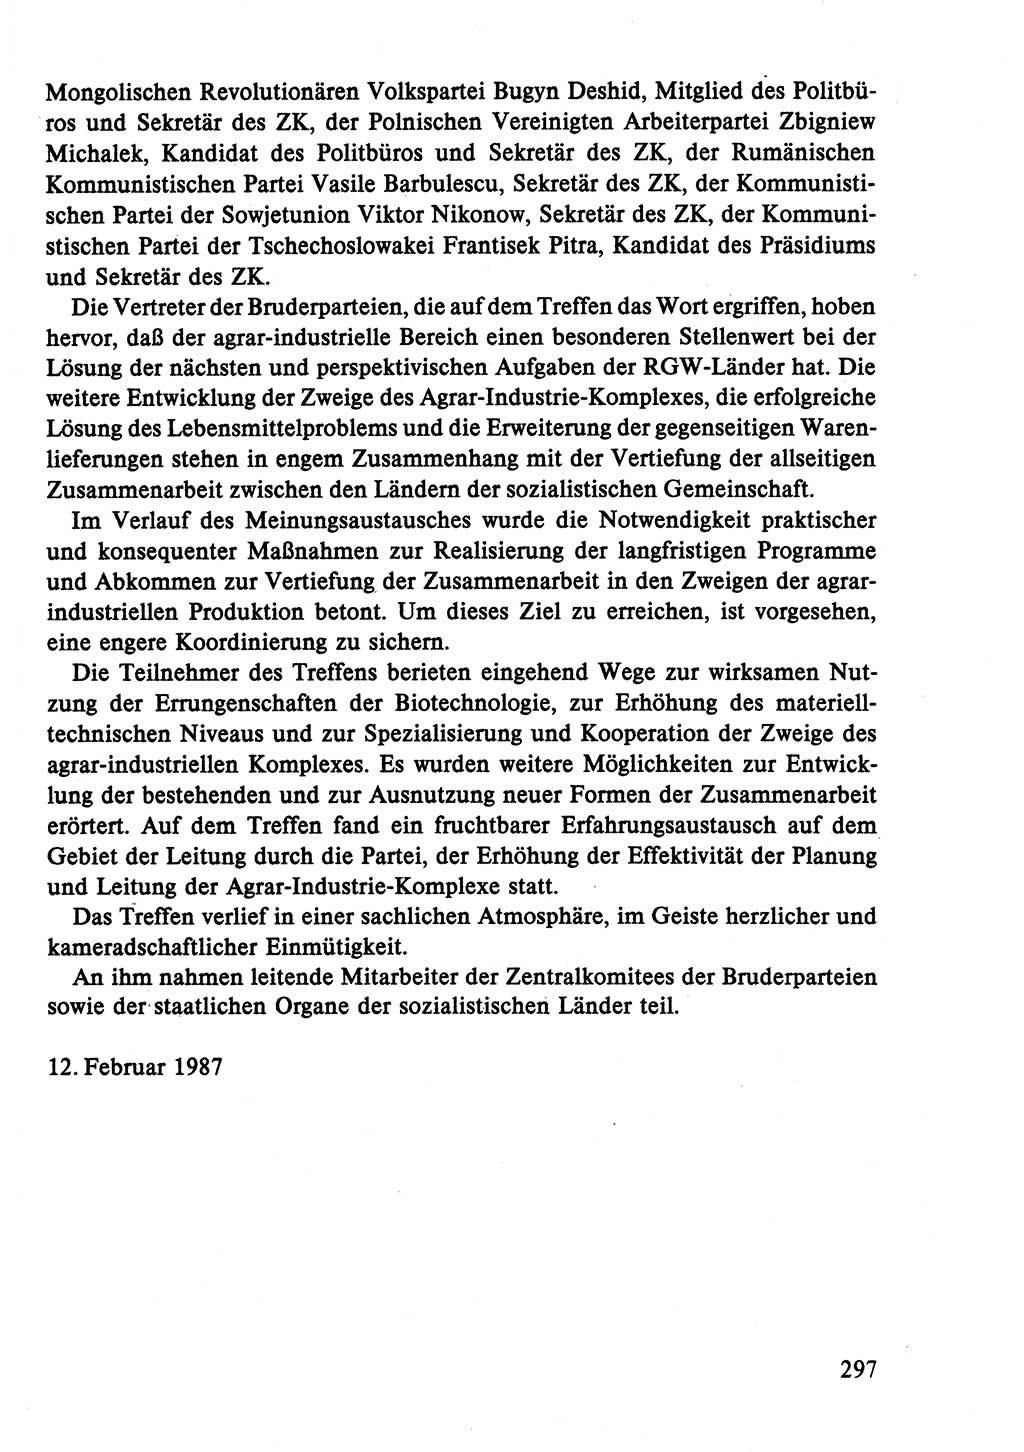 Dokumente der Sozialistischen Einheitspartei Deutschlands (SED) [Deutsche Demokratische Republik (DDR)] 1986-1987, Seite 297 (Dok. SED DDR 1986-1987, S. 297)